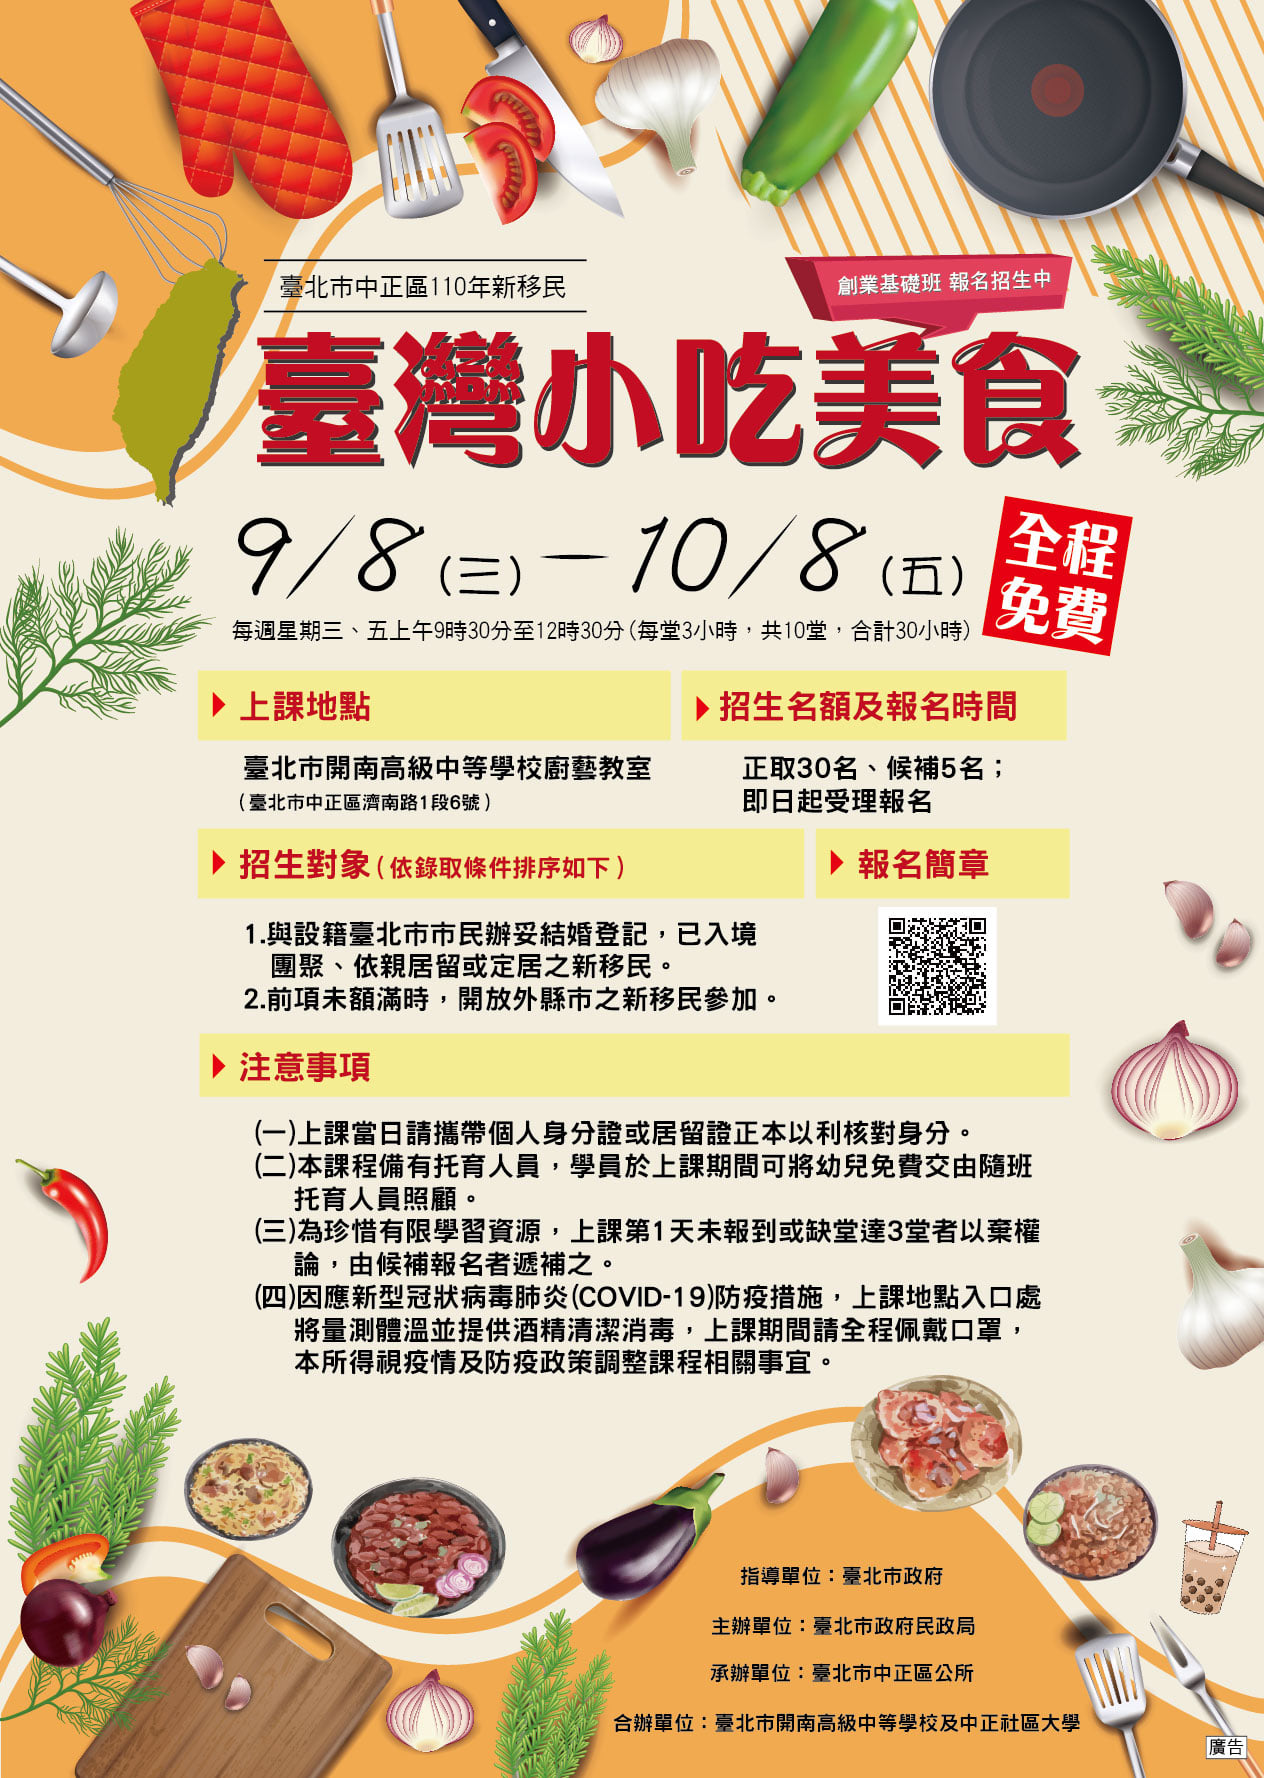 Khóa học diễn ra vào các ngày thứ Tư và thứ Sáu hàng tuần từ ngày 8/9 đến ngày 8/10. Thời gian đăng ký bắt đầu từ bây giờ cho đến hết ngày 31/8. (Nguồn ảnh: chính quyền thành phố Đài Bắc)